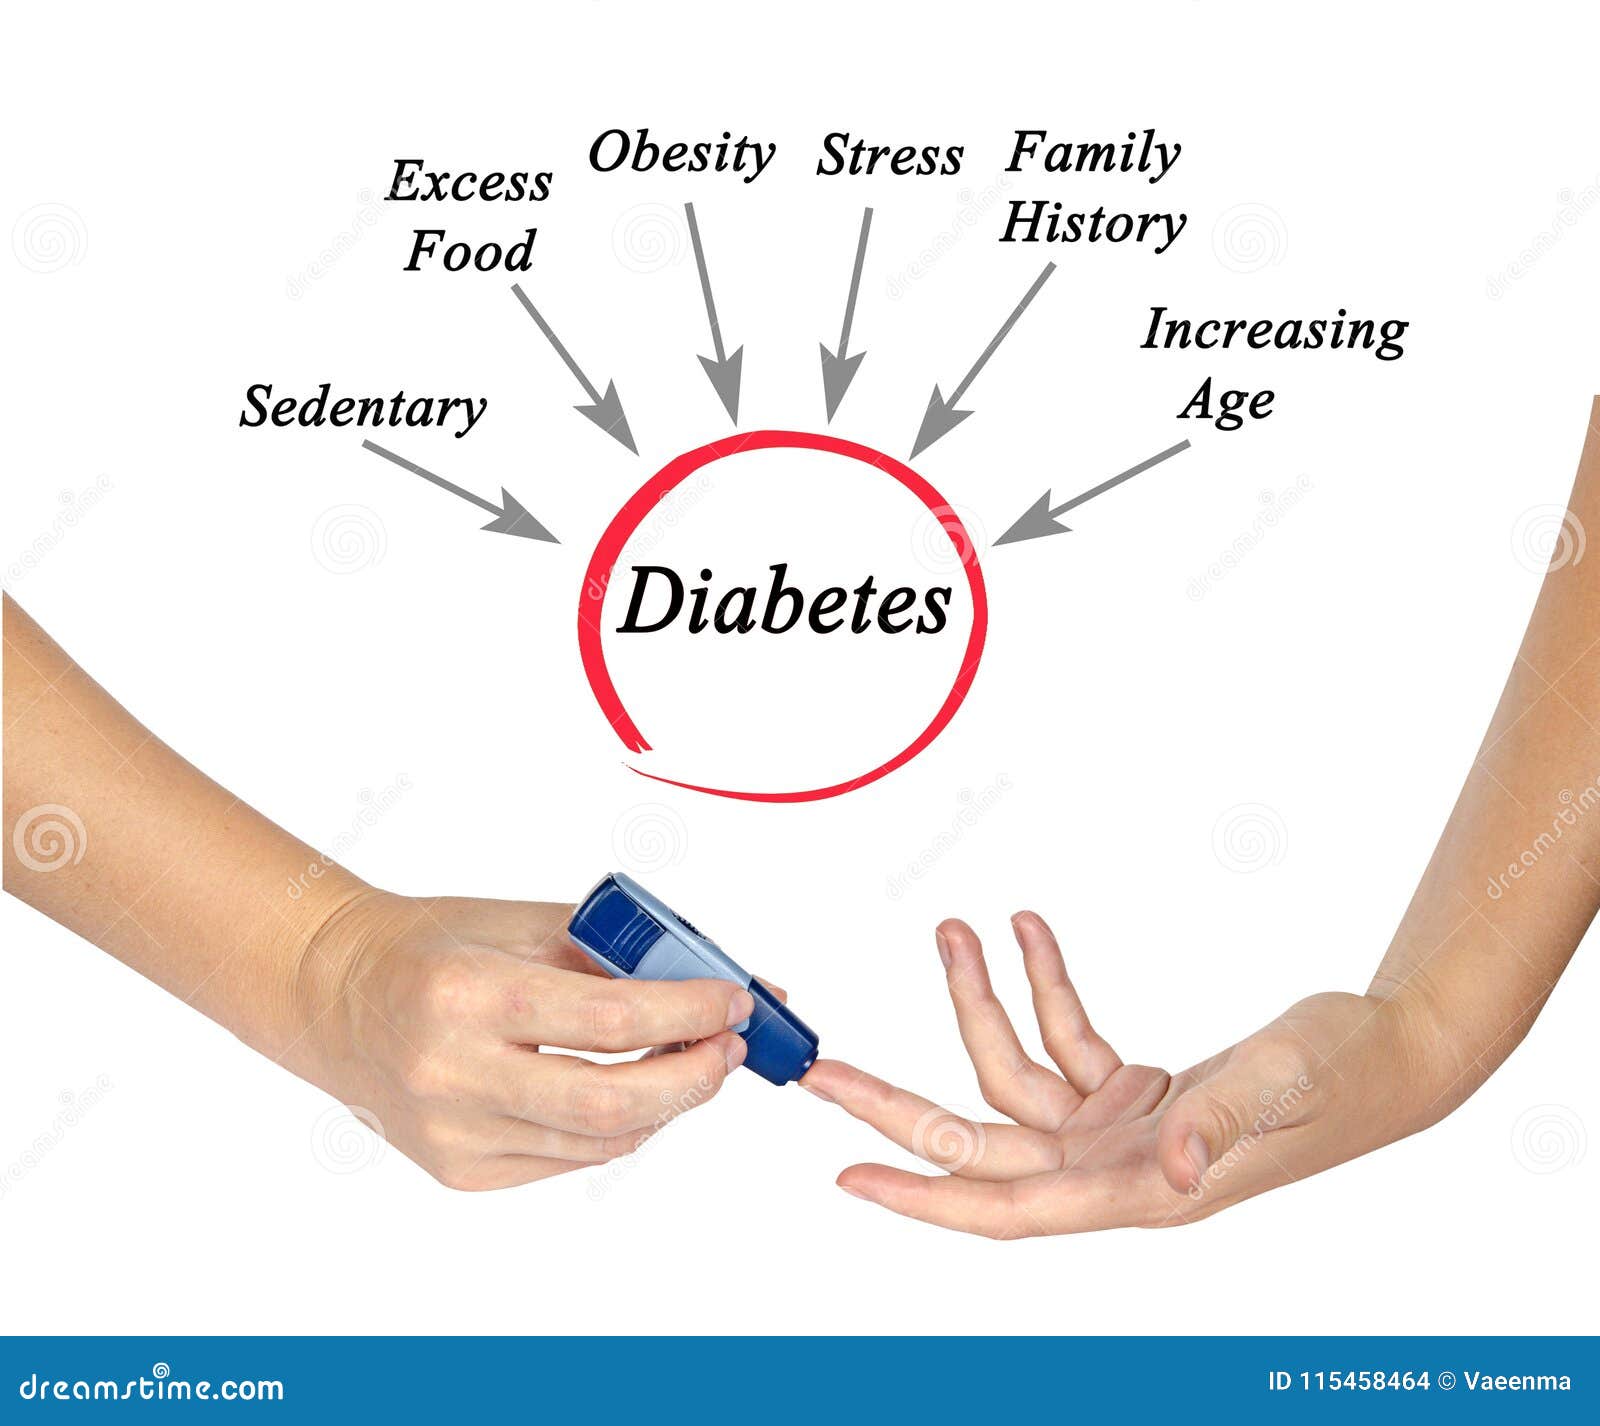 endocrinology diabetes and metabolism journal impact factor soda a cukorbetegség kezelésében